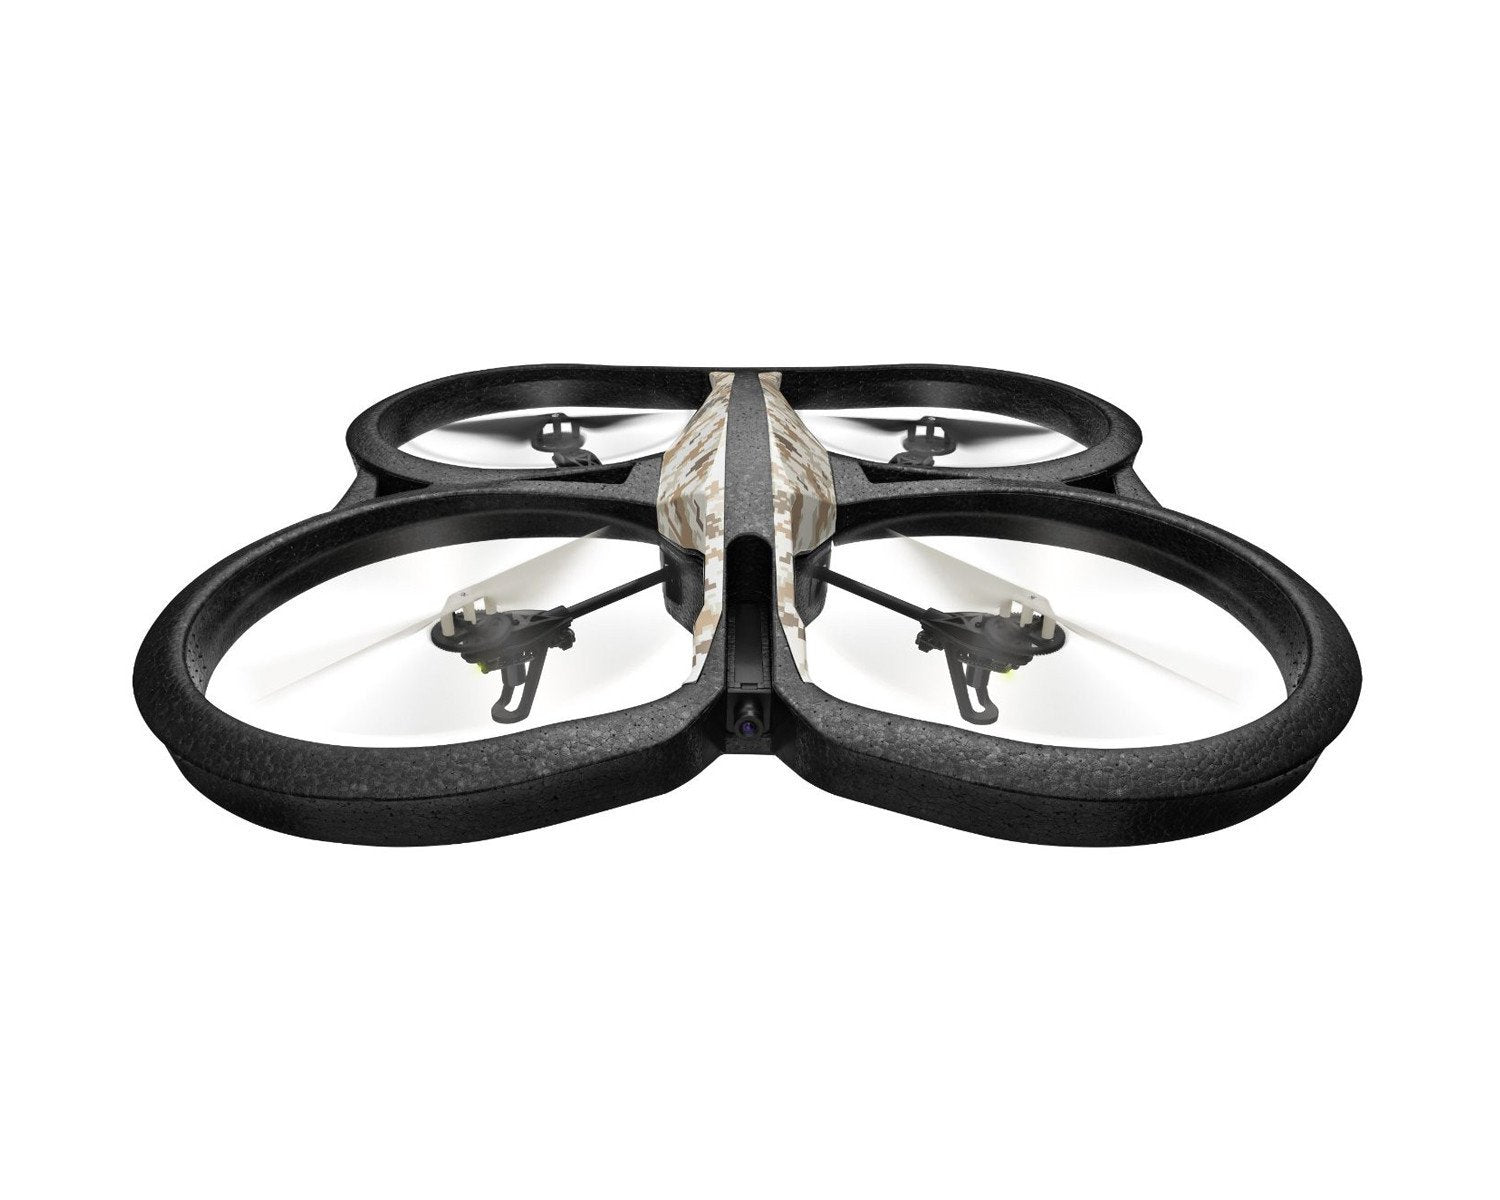 A.R. Drone 2.0 Elite Jungle Edition